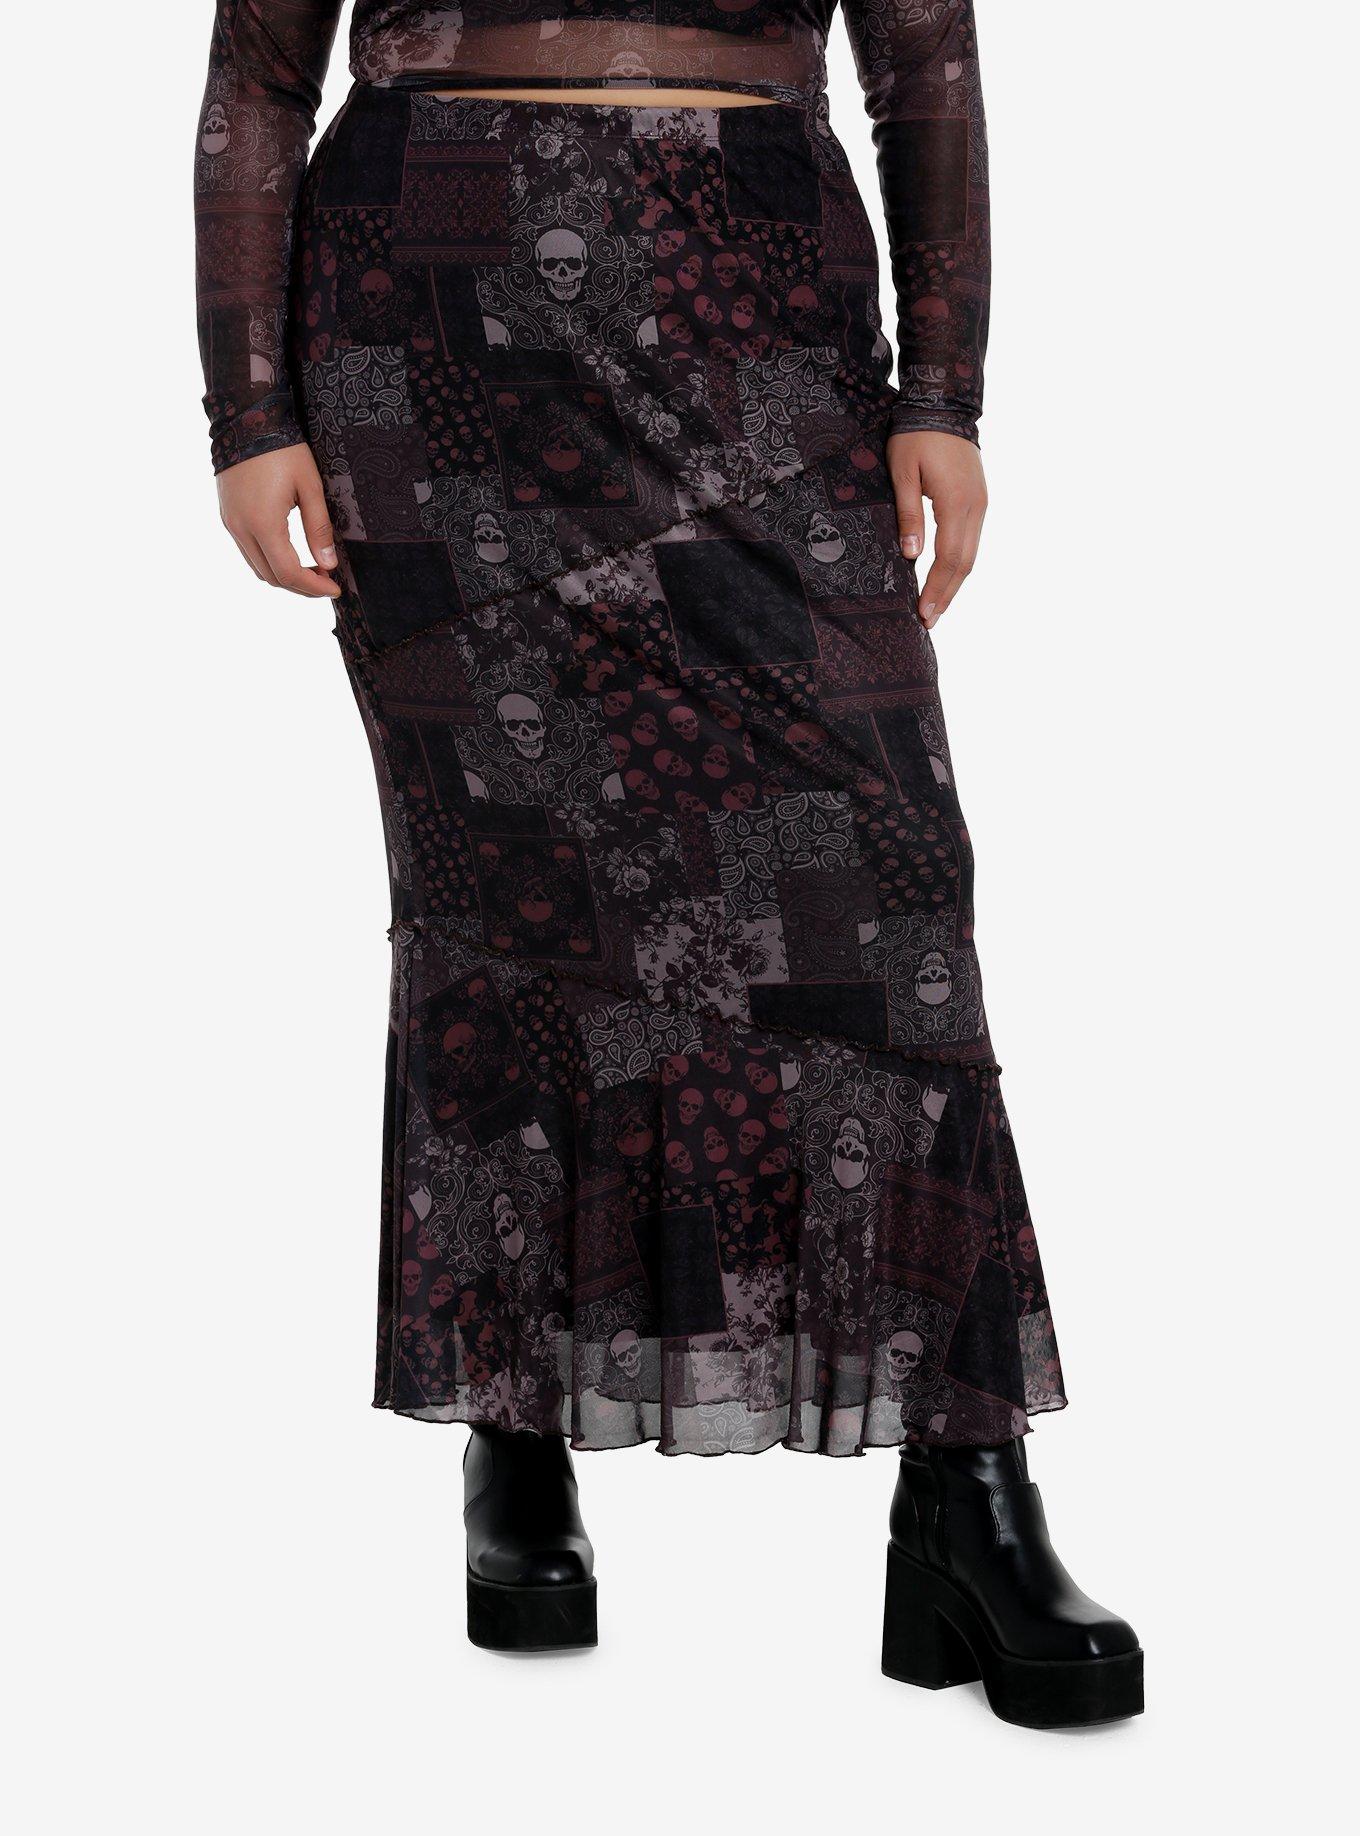 Social Collision Skull Paisley Patchwork Maxi Skirt Plus Size, MAUVE, hi-res